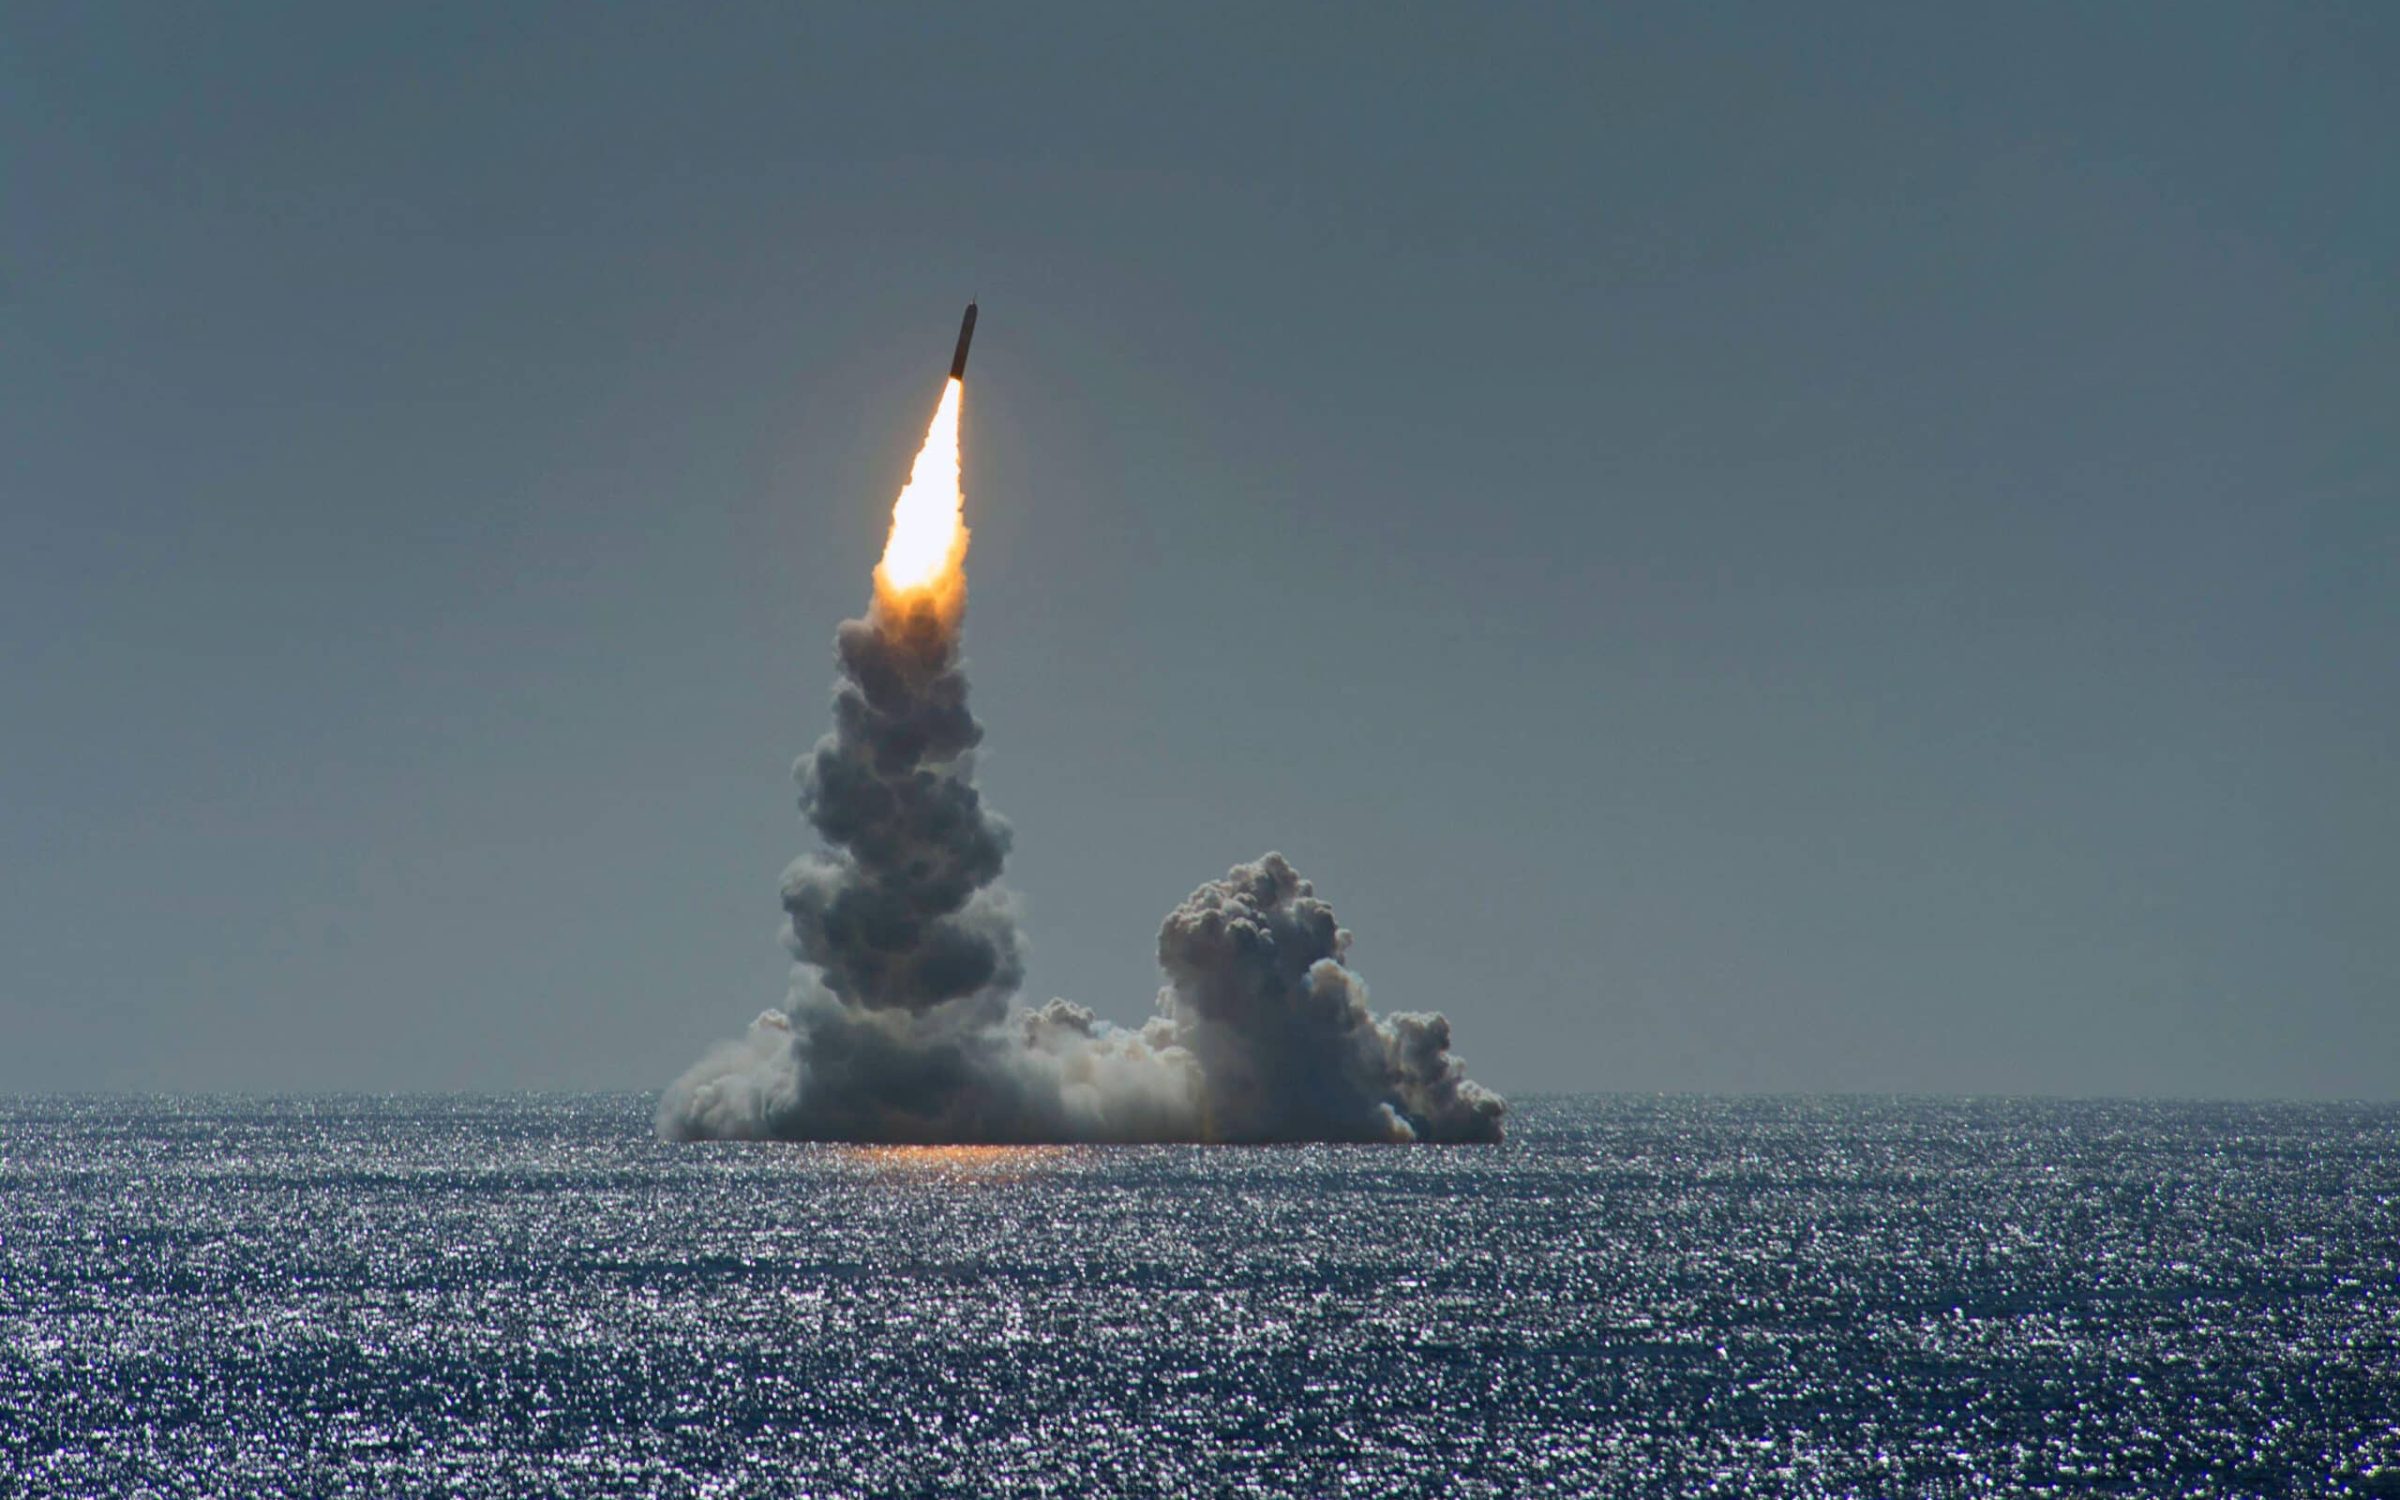 Αποτυχημένη δοκιμή βαλλιστικού πυραύλου Trident II από βρετανικό υποβρύχιο: «Μεγάλη ντροπή που δημιουργεί ζητήματα ασφάλειας»